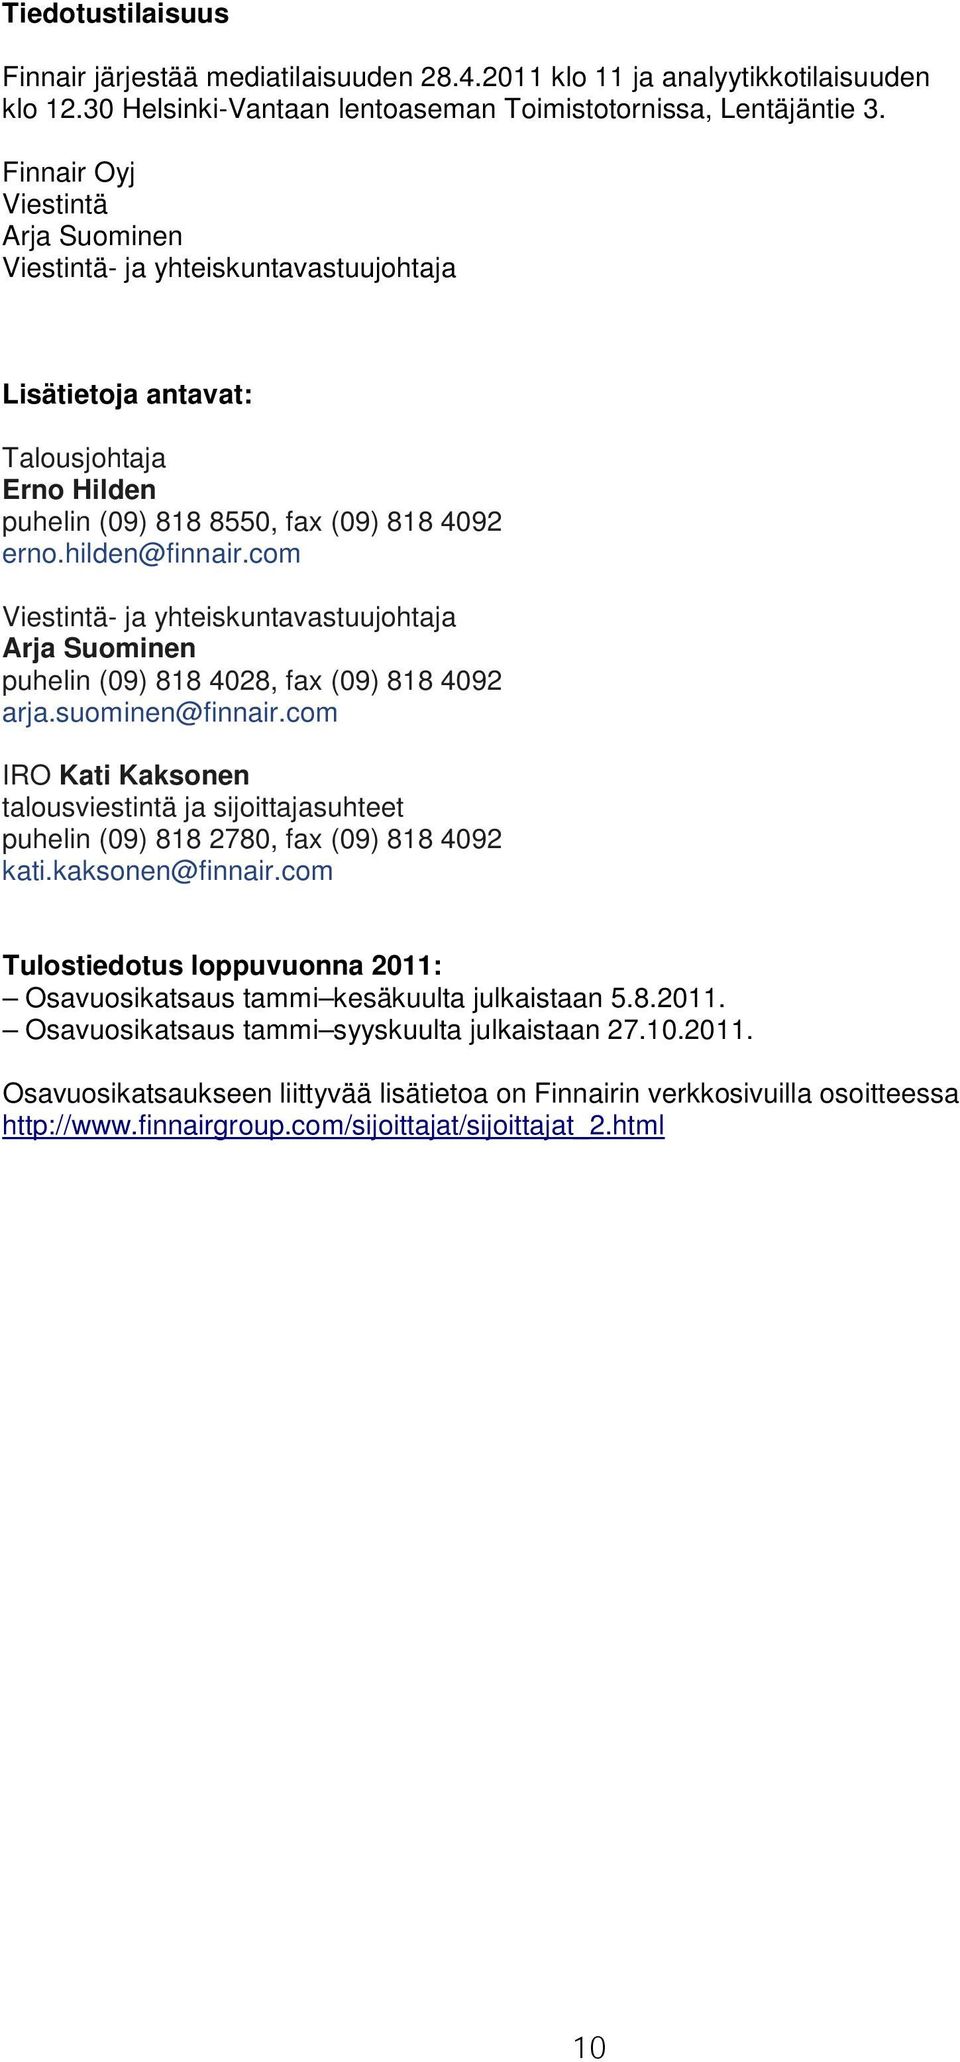 com Viestintä- ja yhteiskuntavastuujohtaja Arja Suominen puhelin (09) 818 4028, fax (09) 818 4092 arja.suominen@finnair.